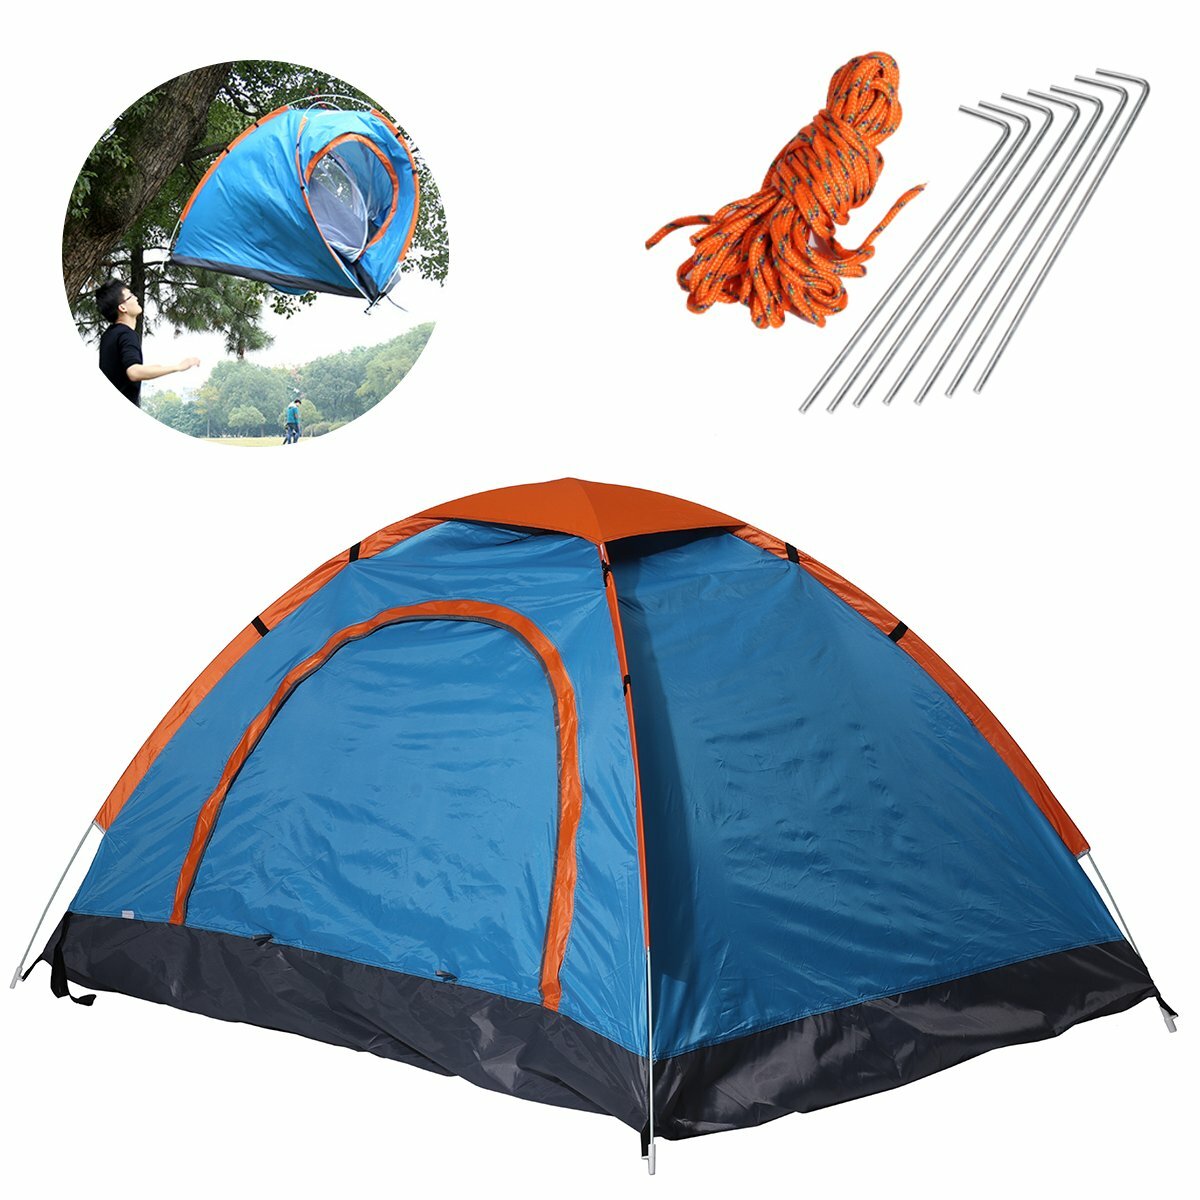 79x59x39 inch 2 personen camping tent opvouwbare waterdichte ultralichte zonnescherm luifel outdoor 